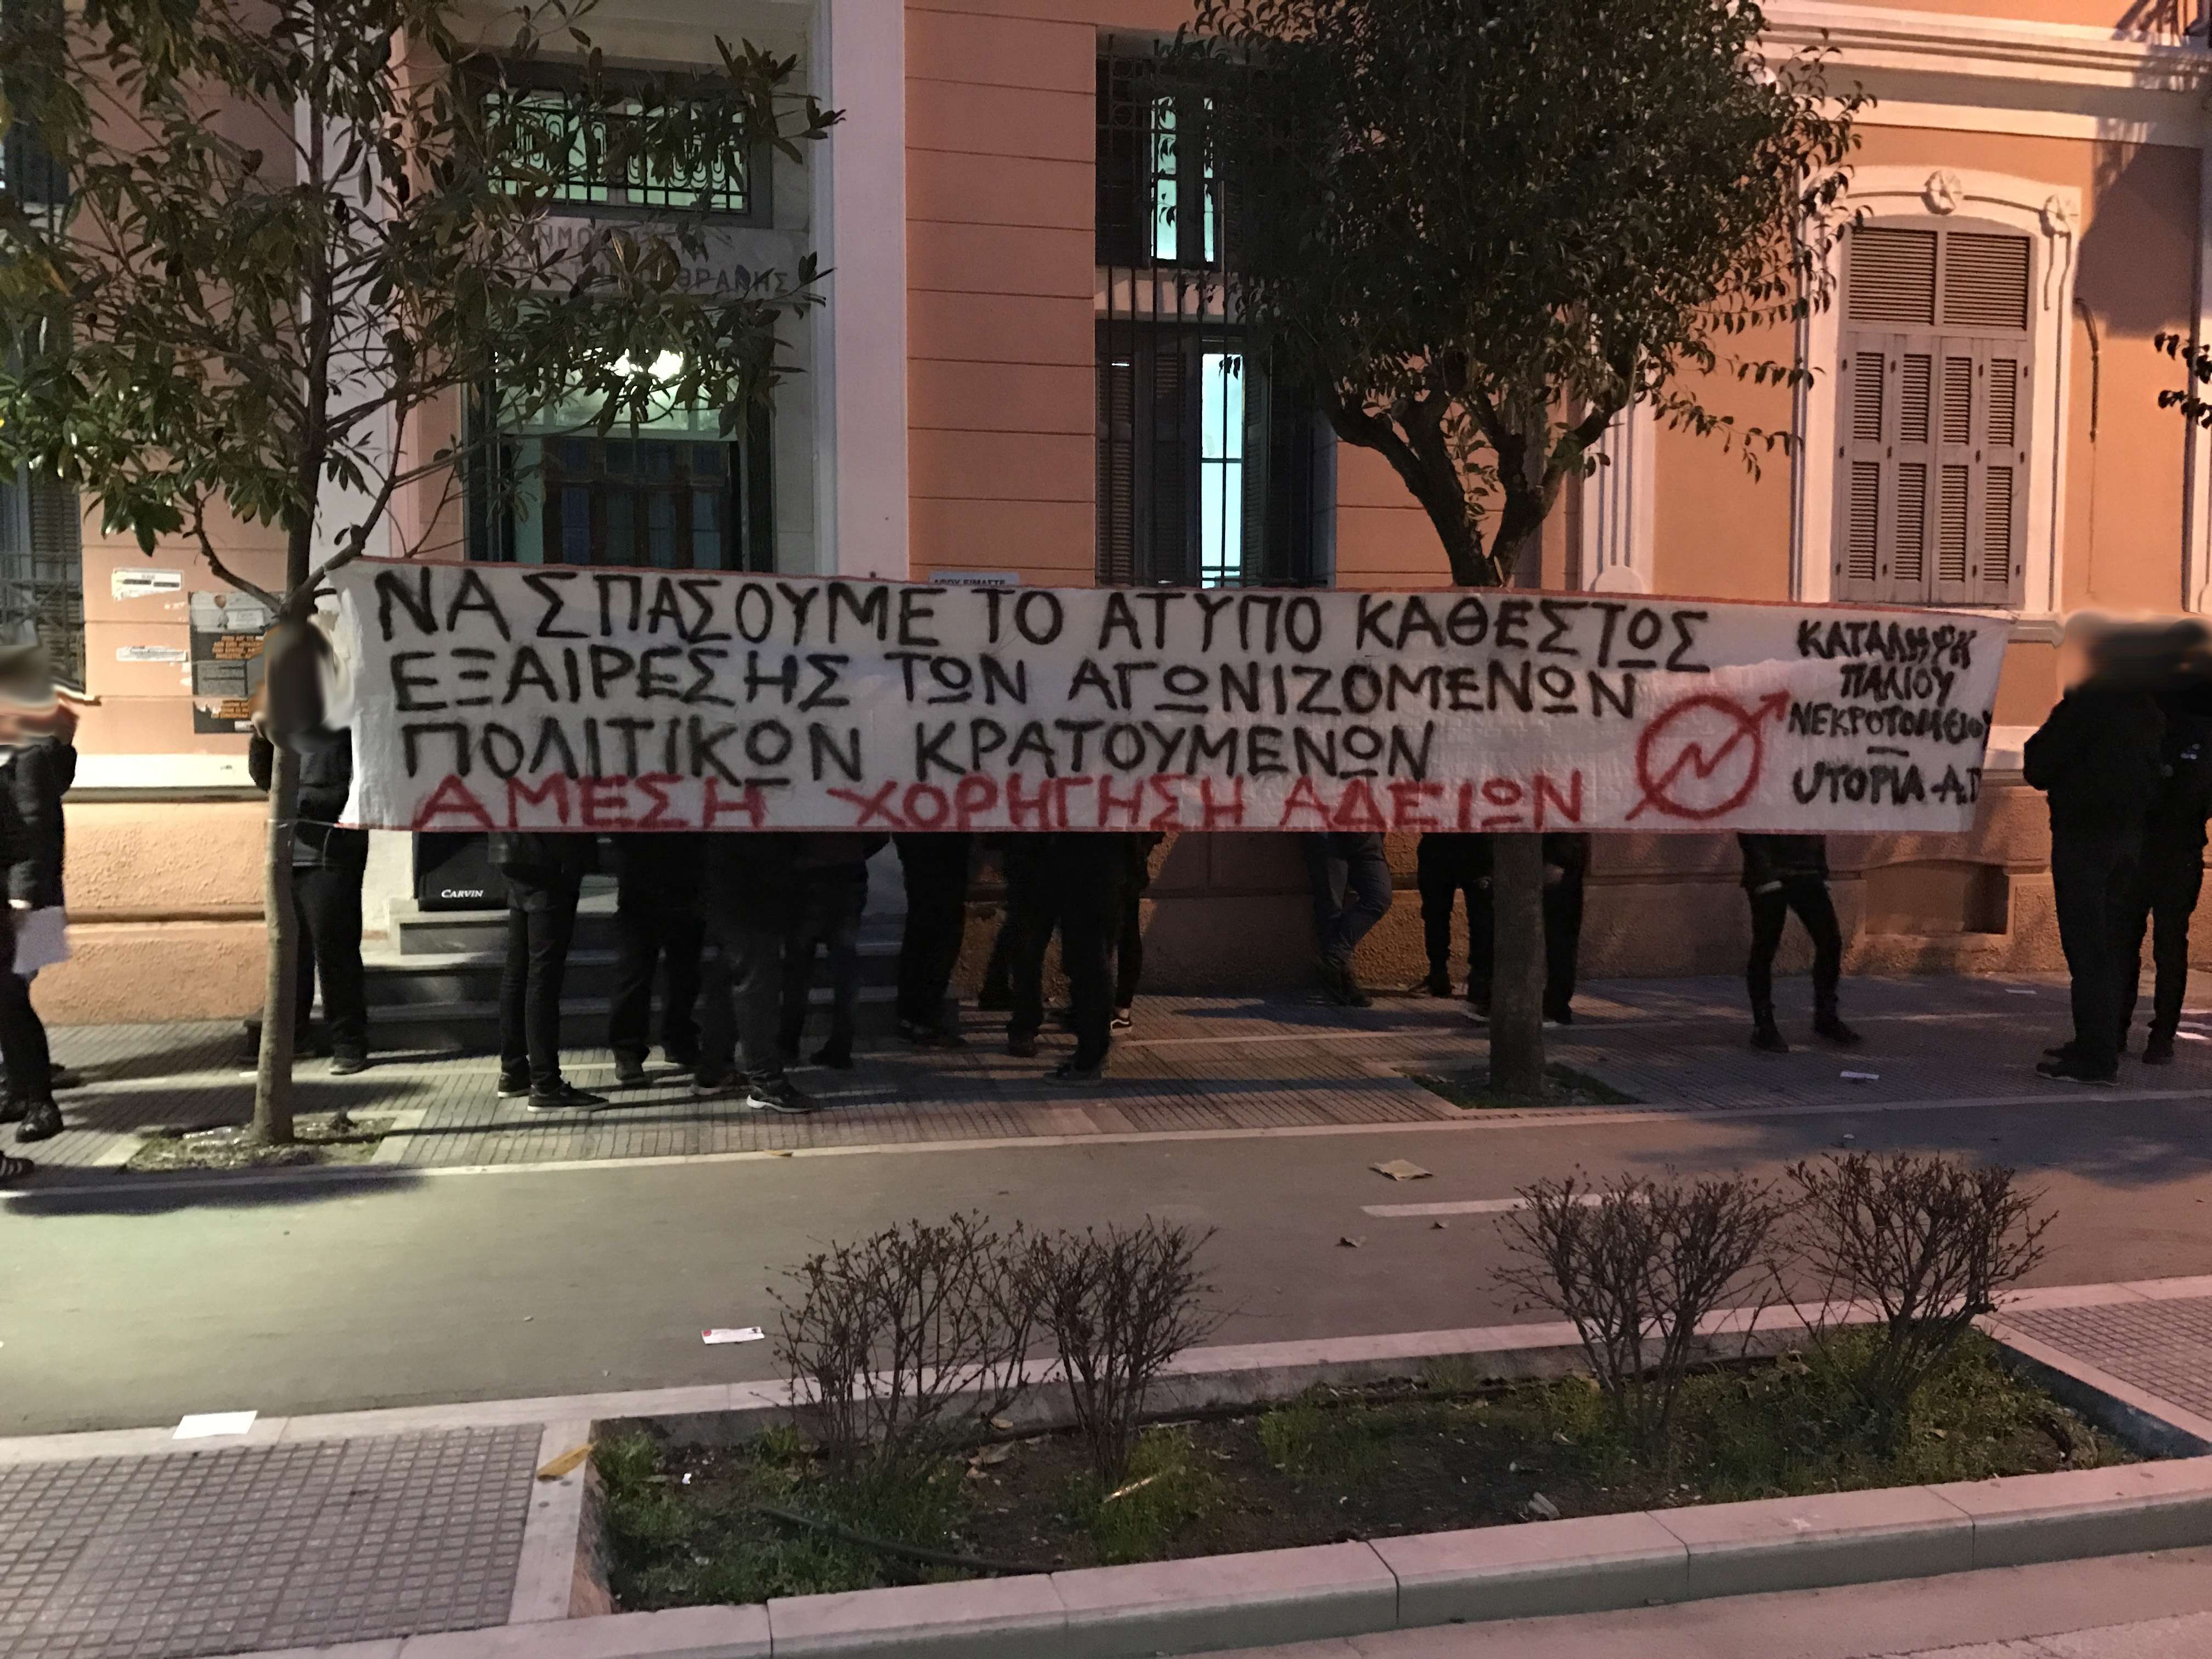 Αλεξανδρουπολη: Μικροφωνική για την πανελλάδικη μέρα δράσης ενάντια στο καθεστώς εξαίρεσης και για τη χορήγηση αδειών στους πολιτικούς κρατουμενους